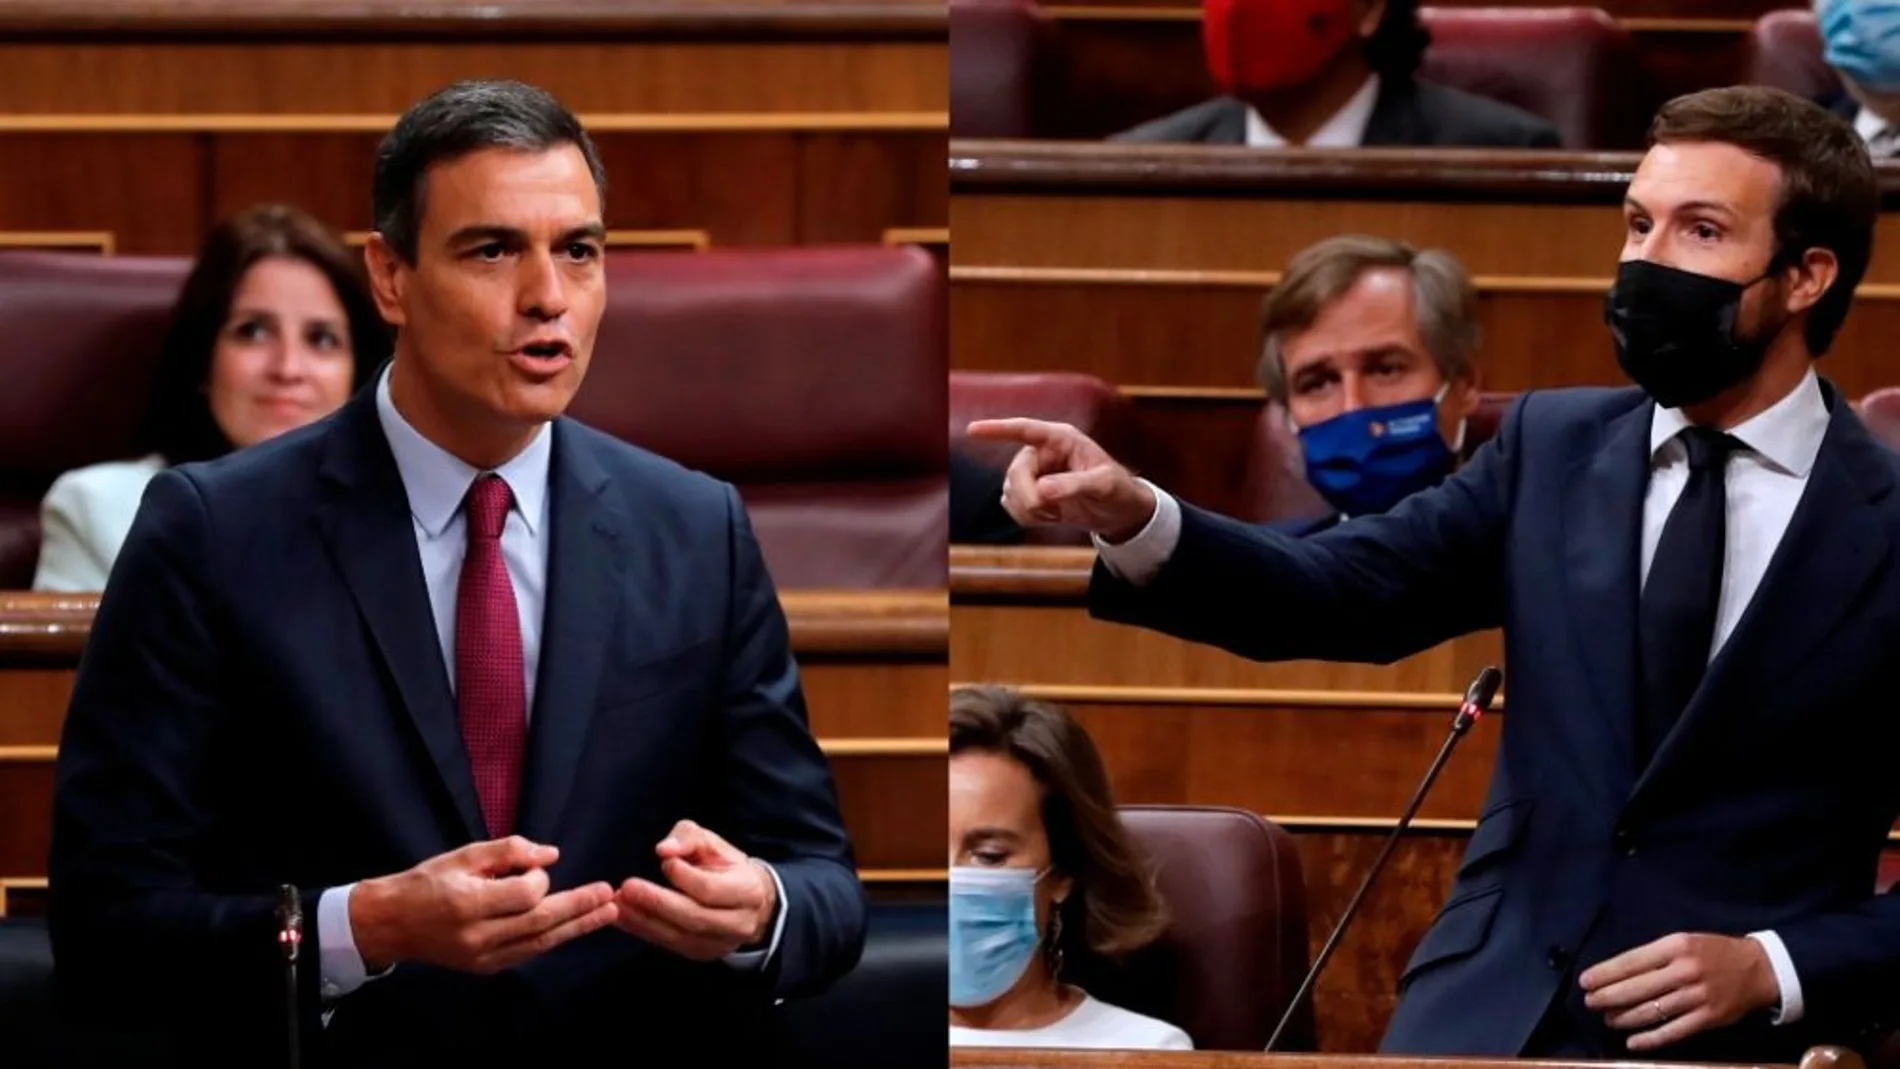 laSexta Noticias 20:00 (16-09-20) Casado acusa al Gobierno de recortar y Sánchez responde: "Los únicos recortes necesarios son en la corrupción del PP"